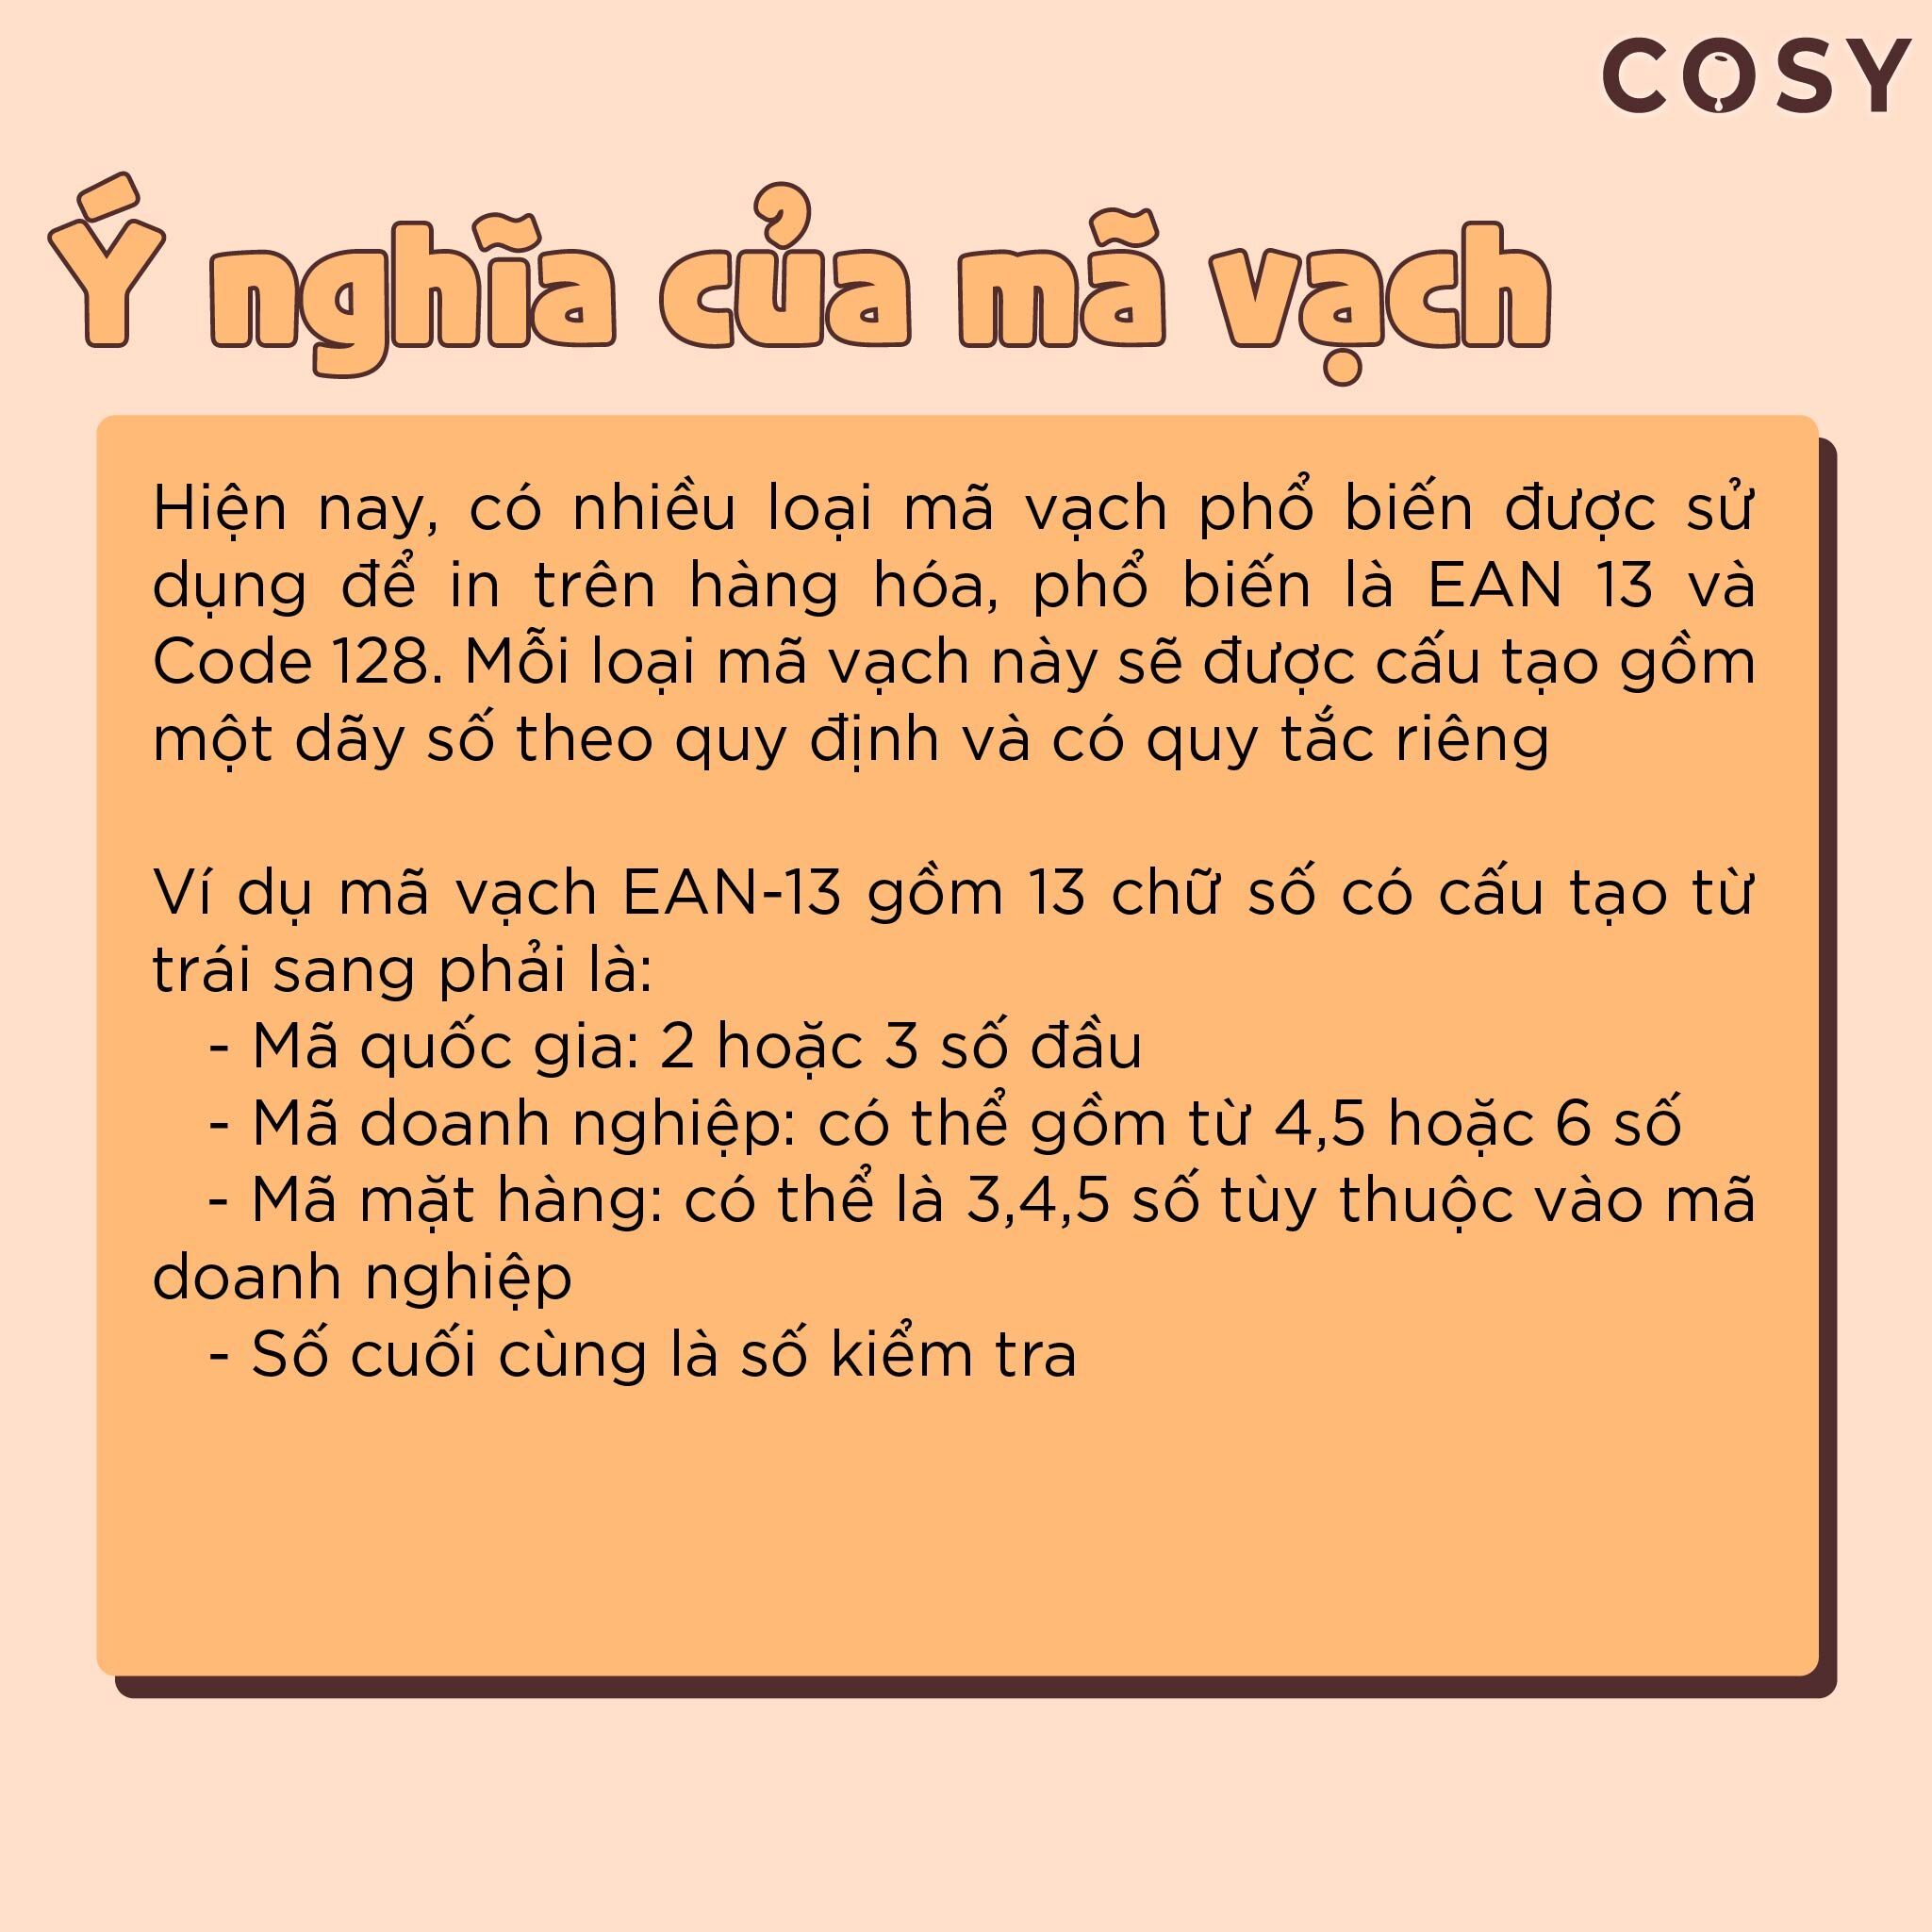 Cosy 03